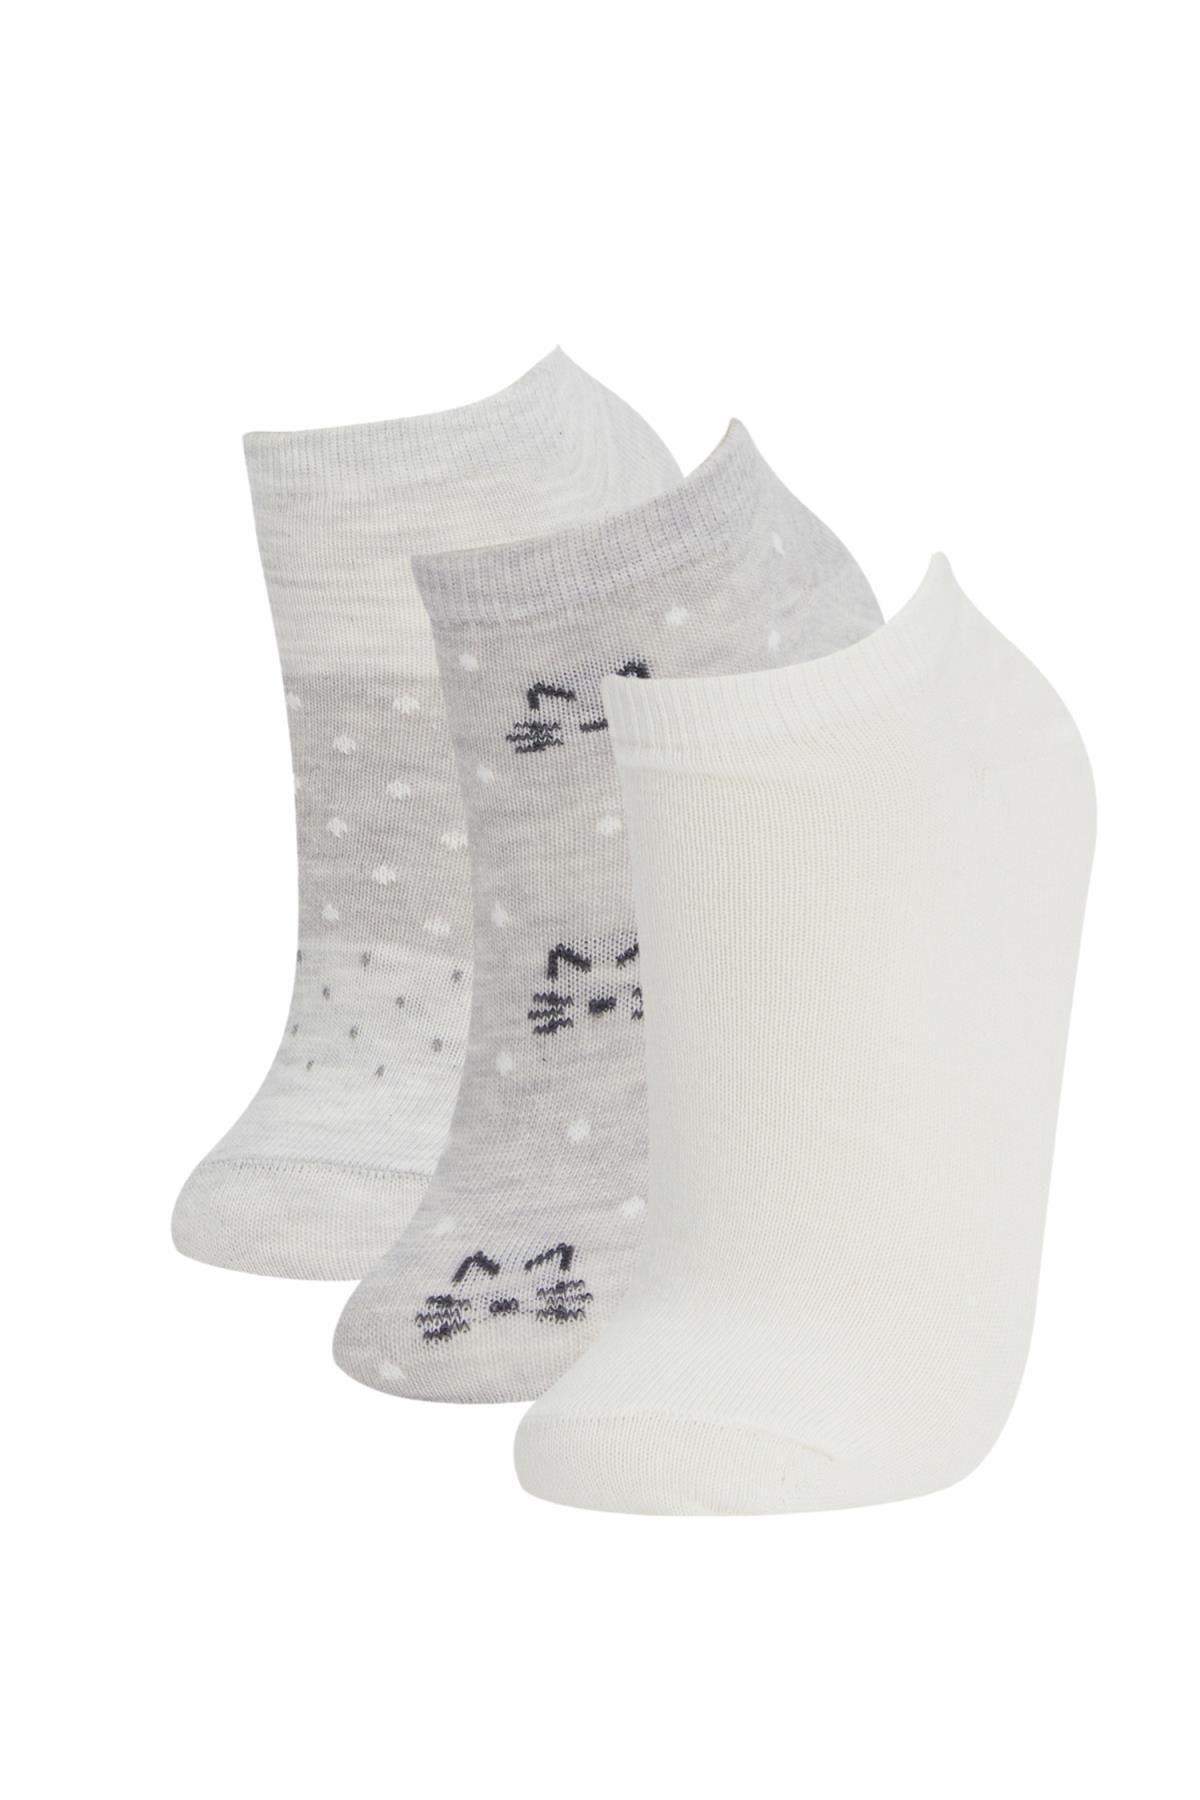 Defacto Kadın Desenli 3lü Patik Çorap N0788azns